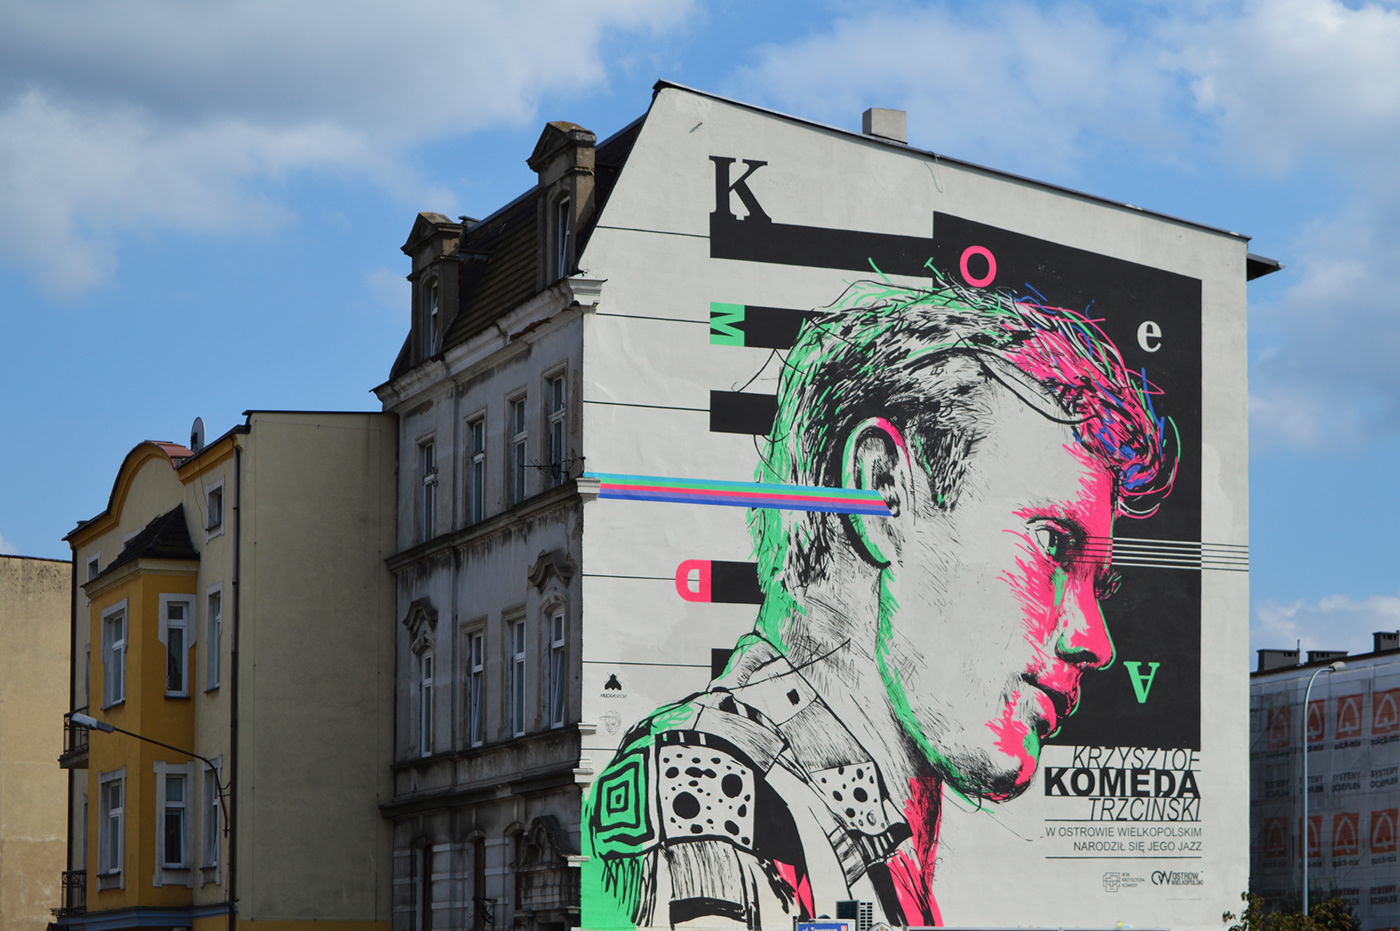 Komeda mural Komeda Krzysztof Komeda Ostrów Wielkopolski Konrad Moszyński muchaDSGN Zdano Konrad Mucha Moszyński mucha dsgn  muchadsgn.com